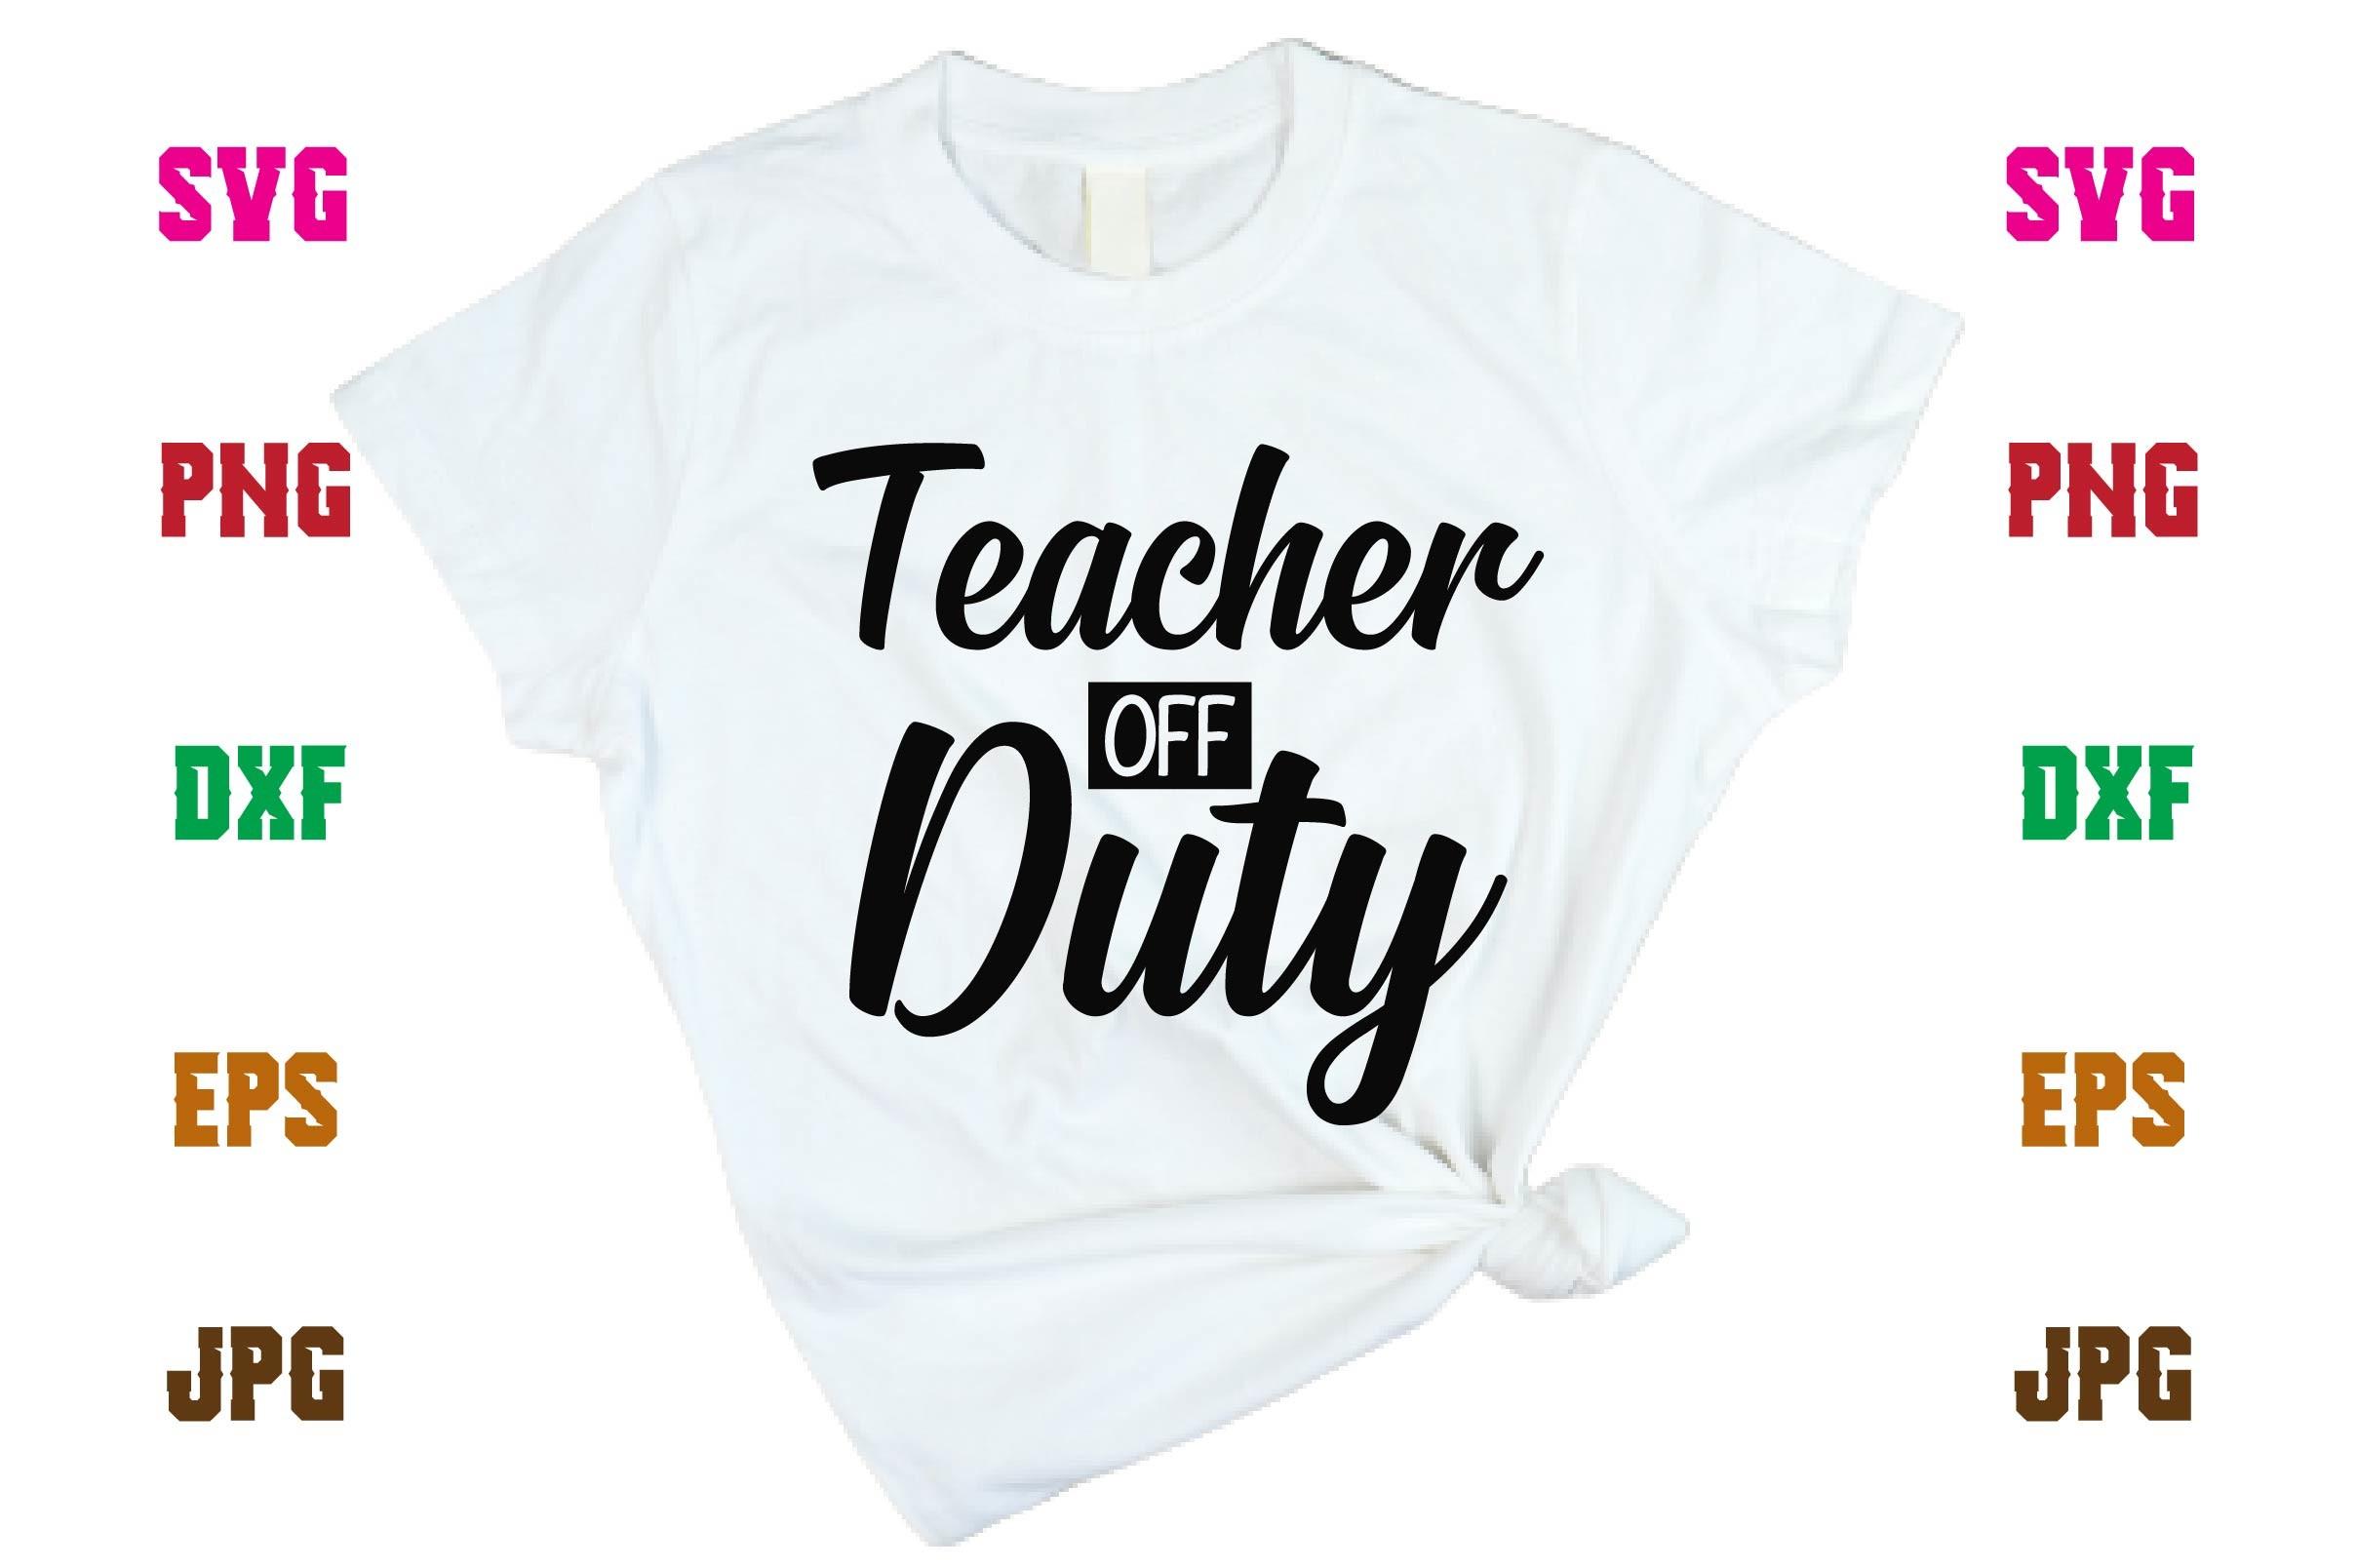 Teacher off Duty